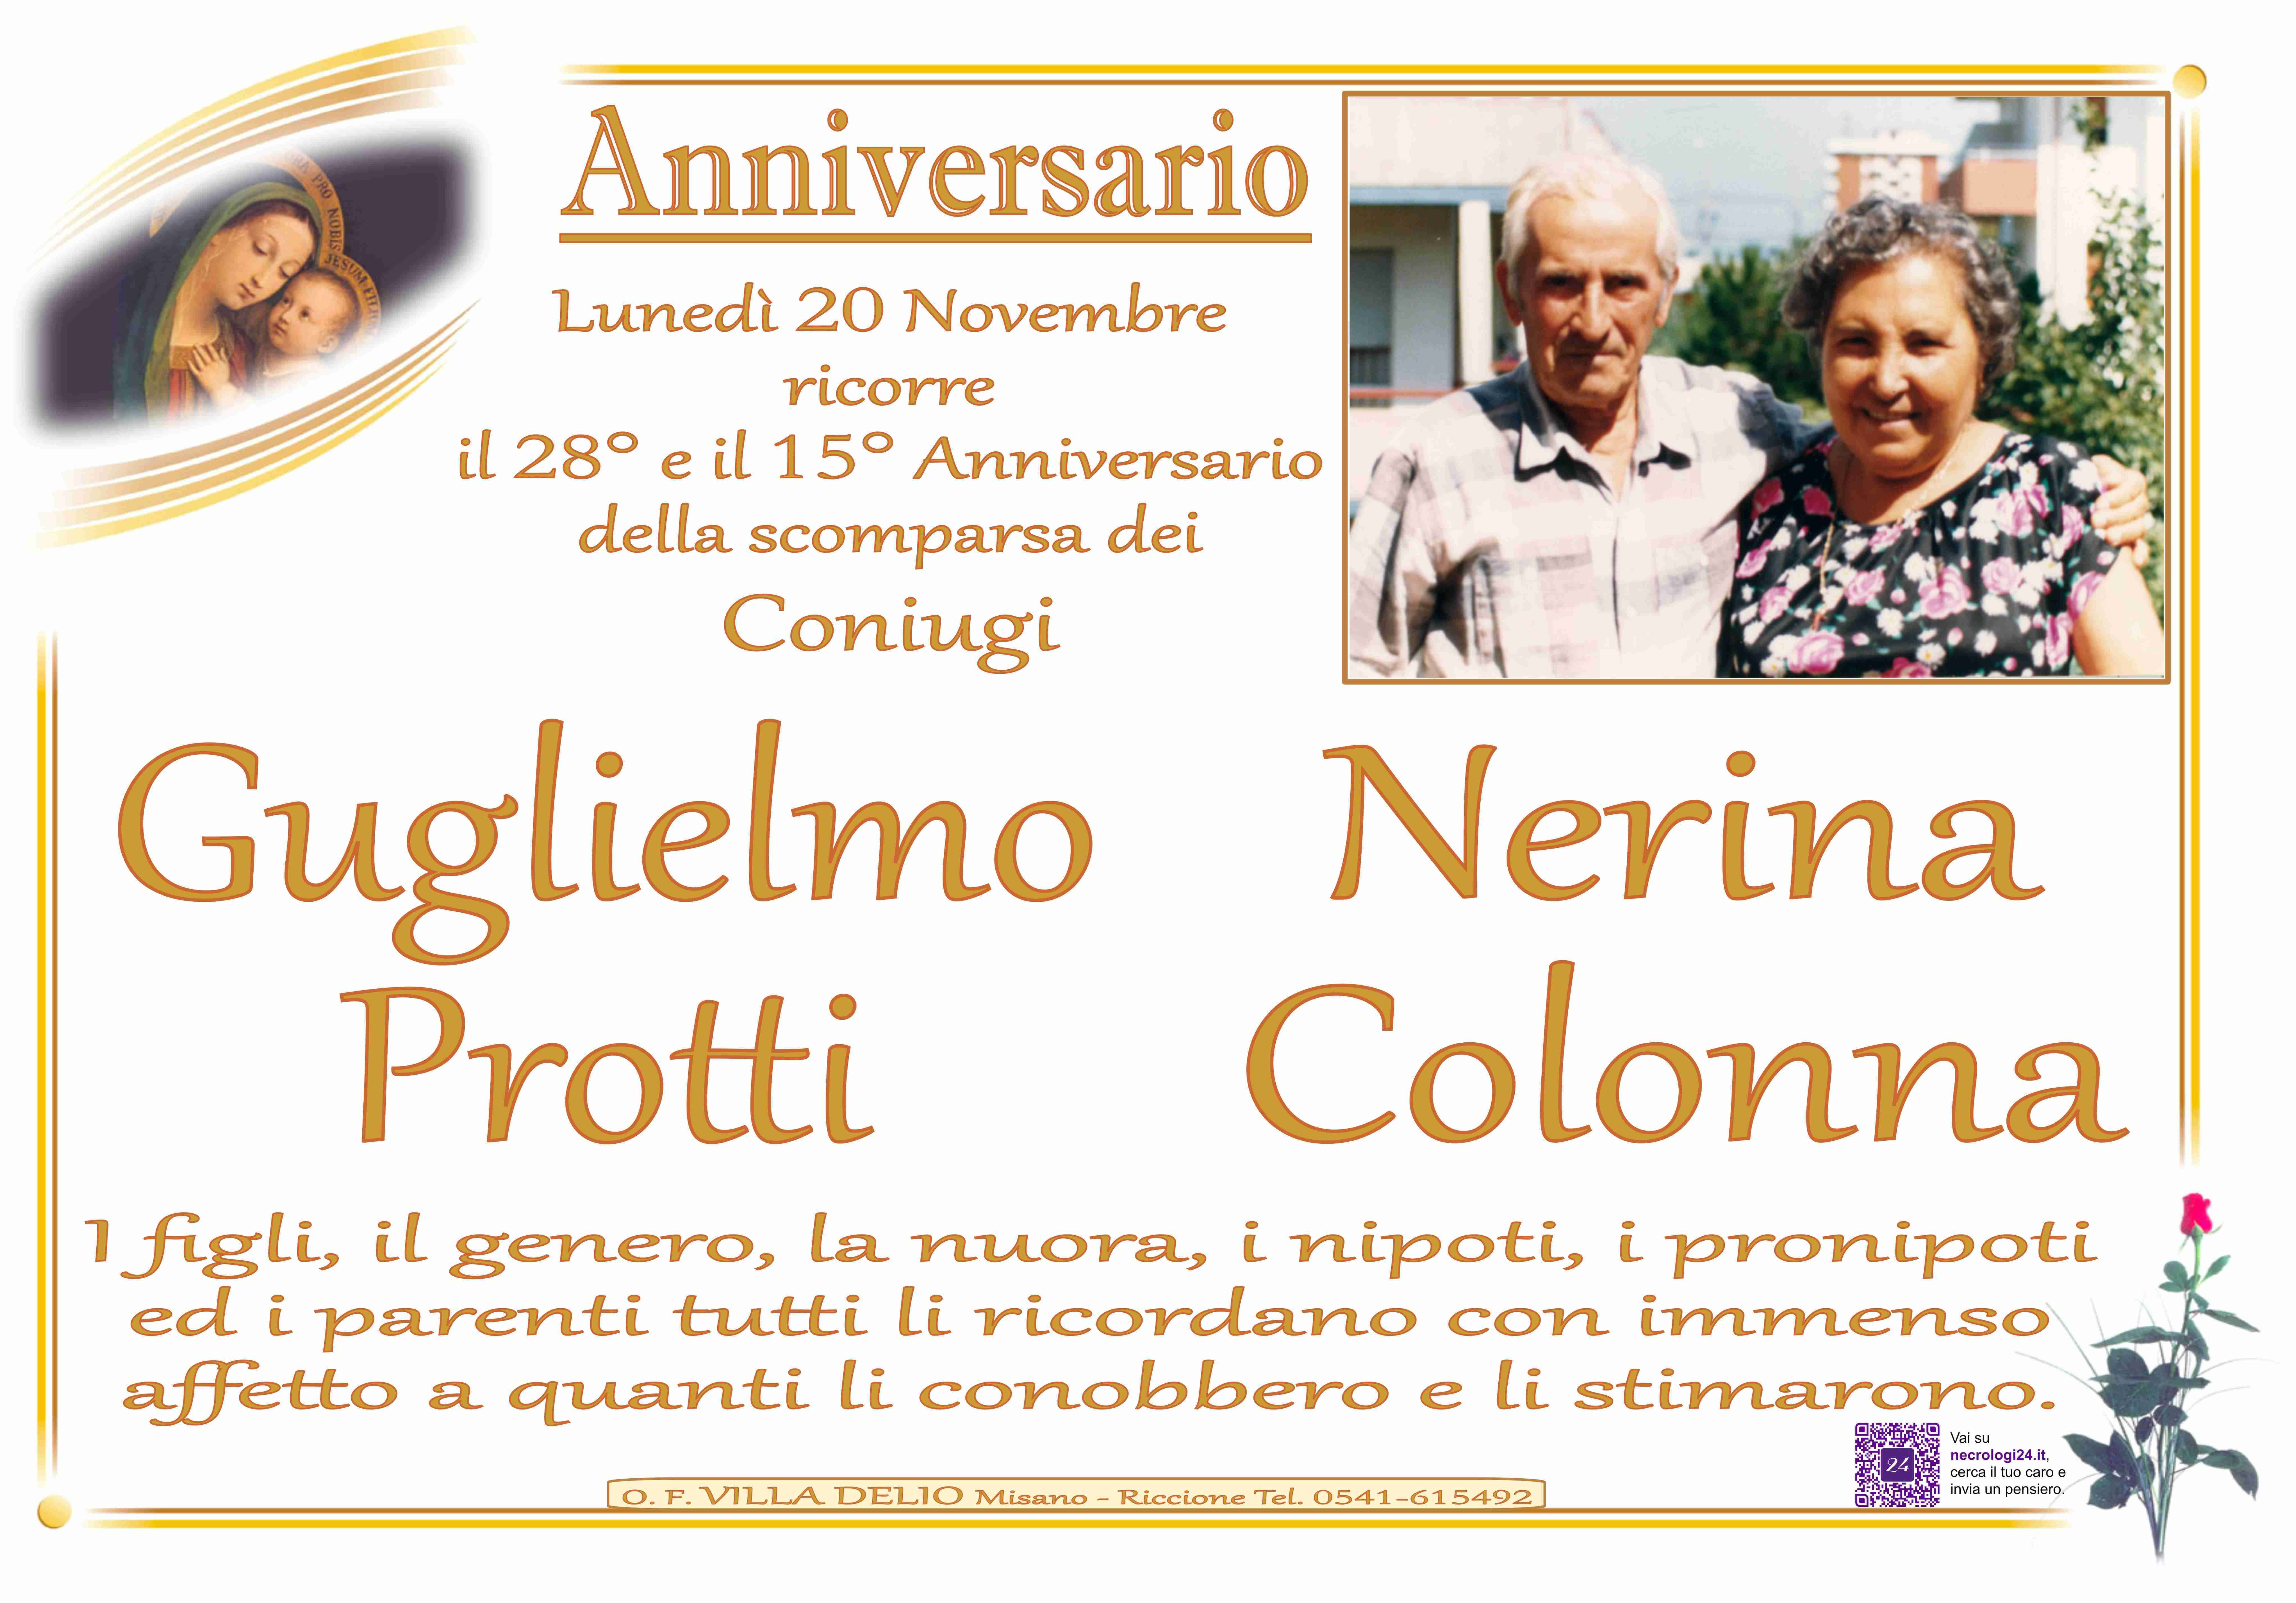 Guglielmo Protti e Nerina Colonna